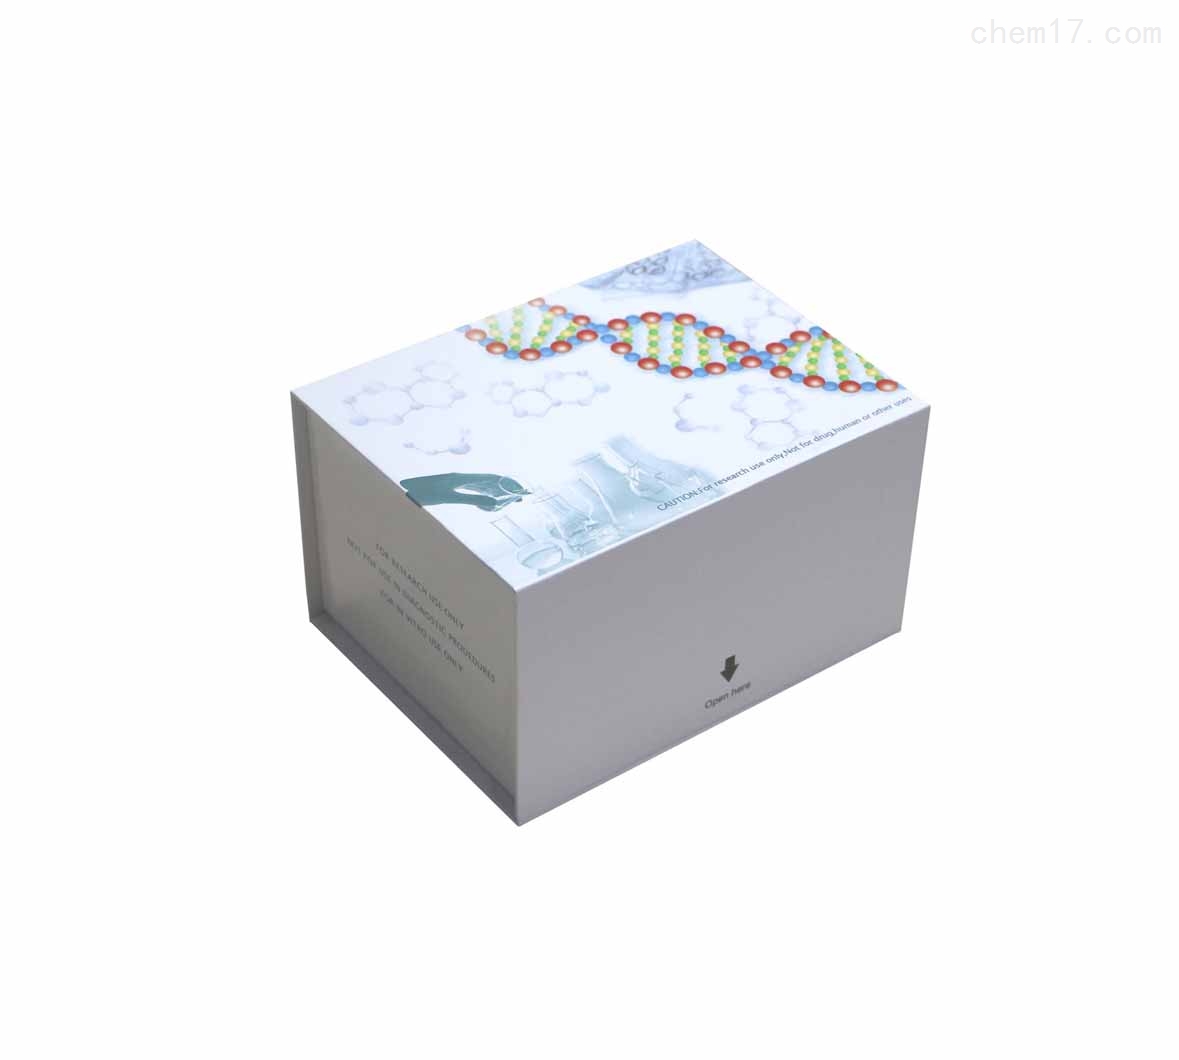 小鼠胶质细胞系来源的神经营养因子(GDNF)ELISA试剂盒当天发货